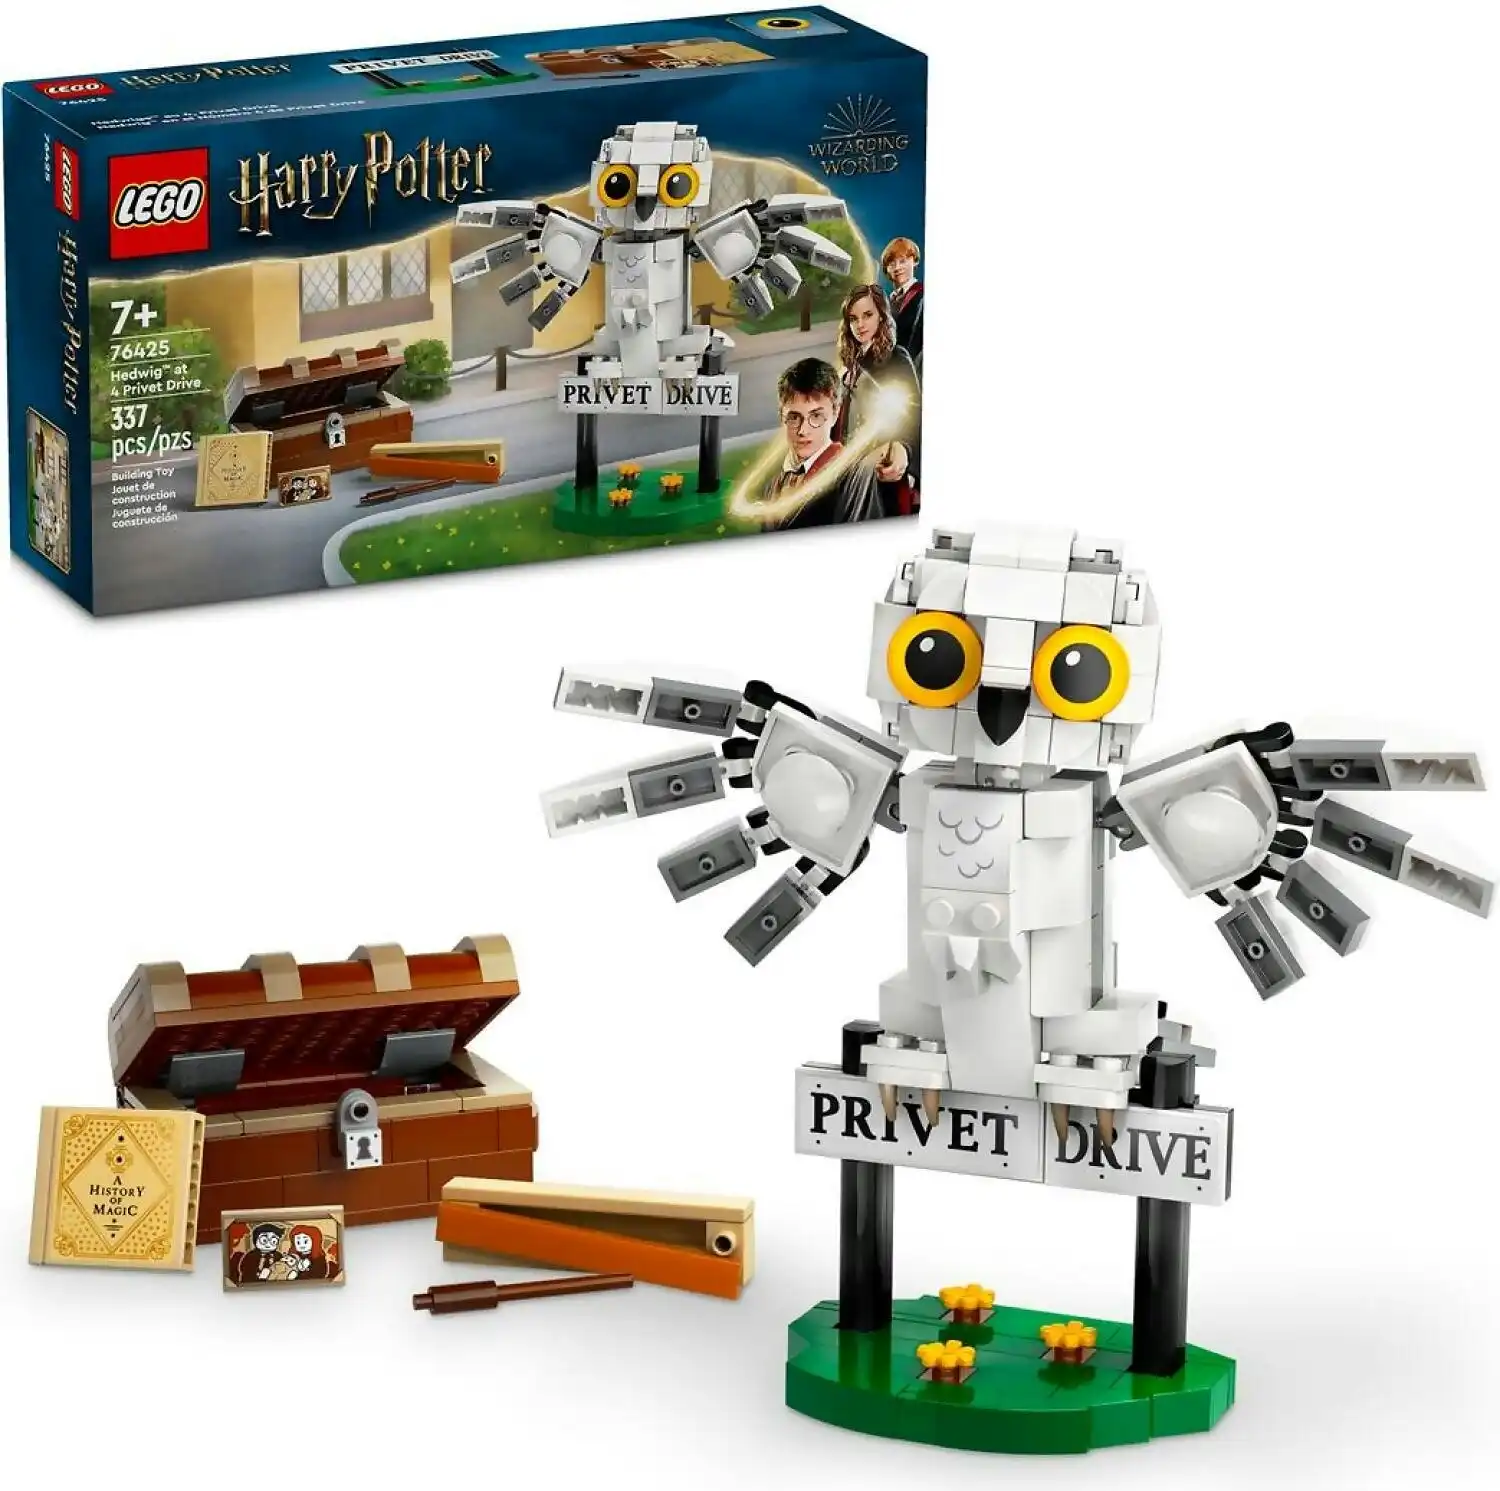 LEGO 76425 Hedwig™ at 4 Privet Drive - Harry Potter